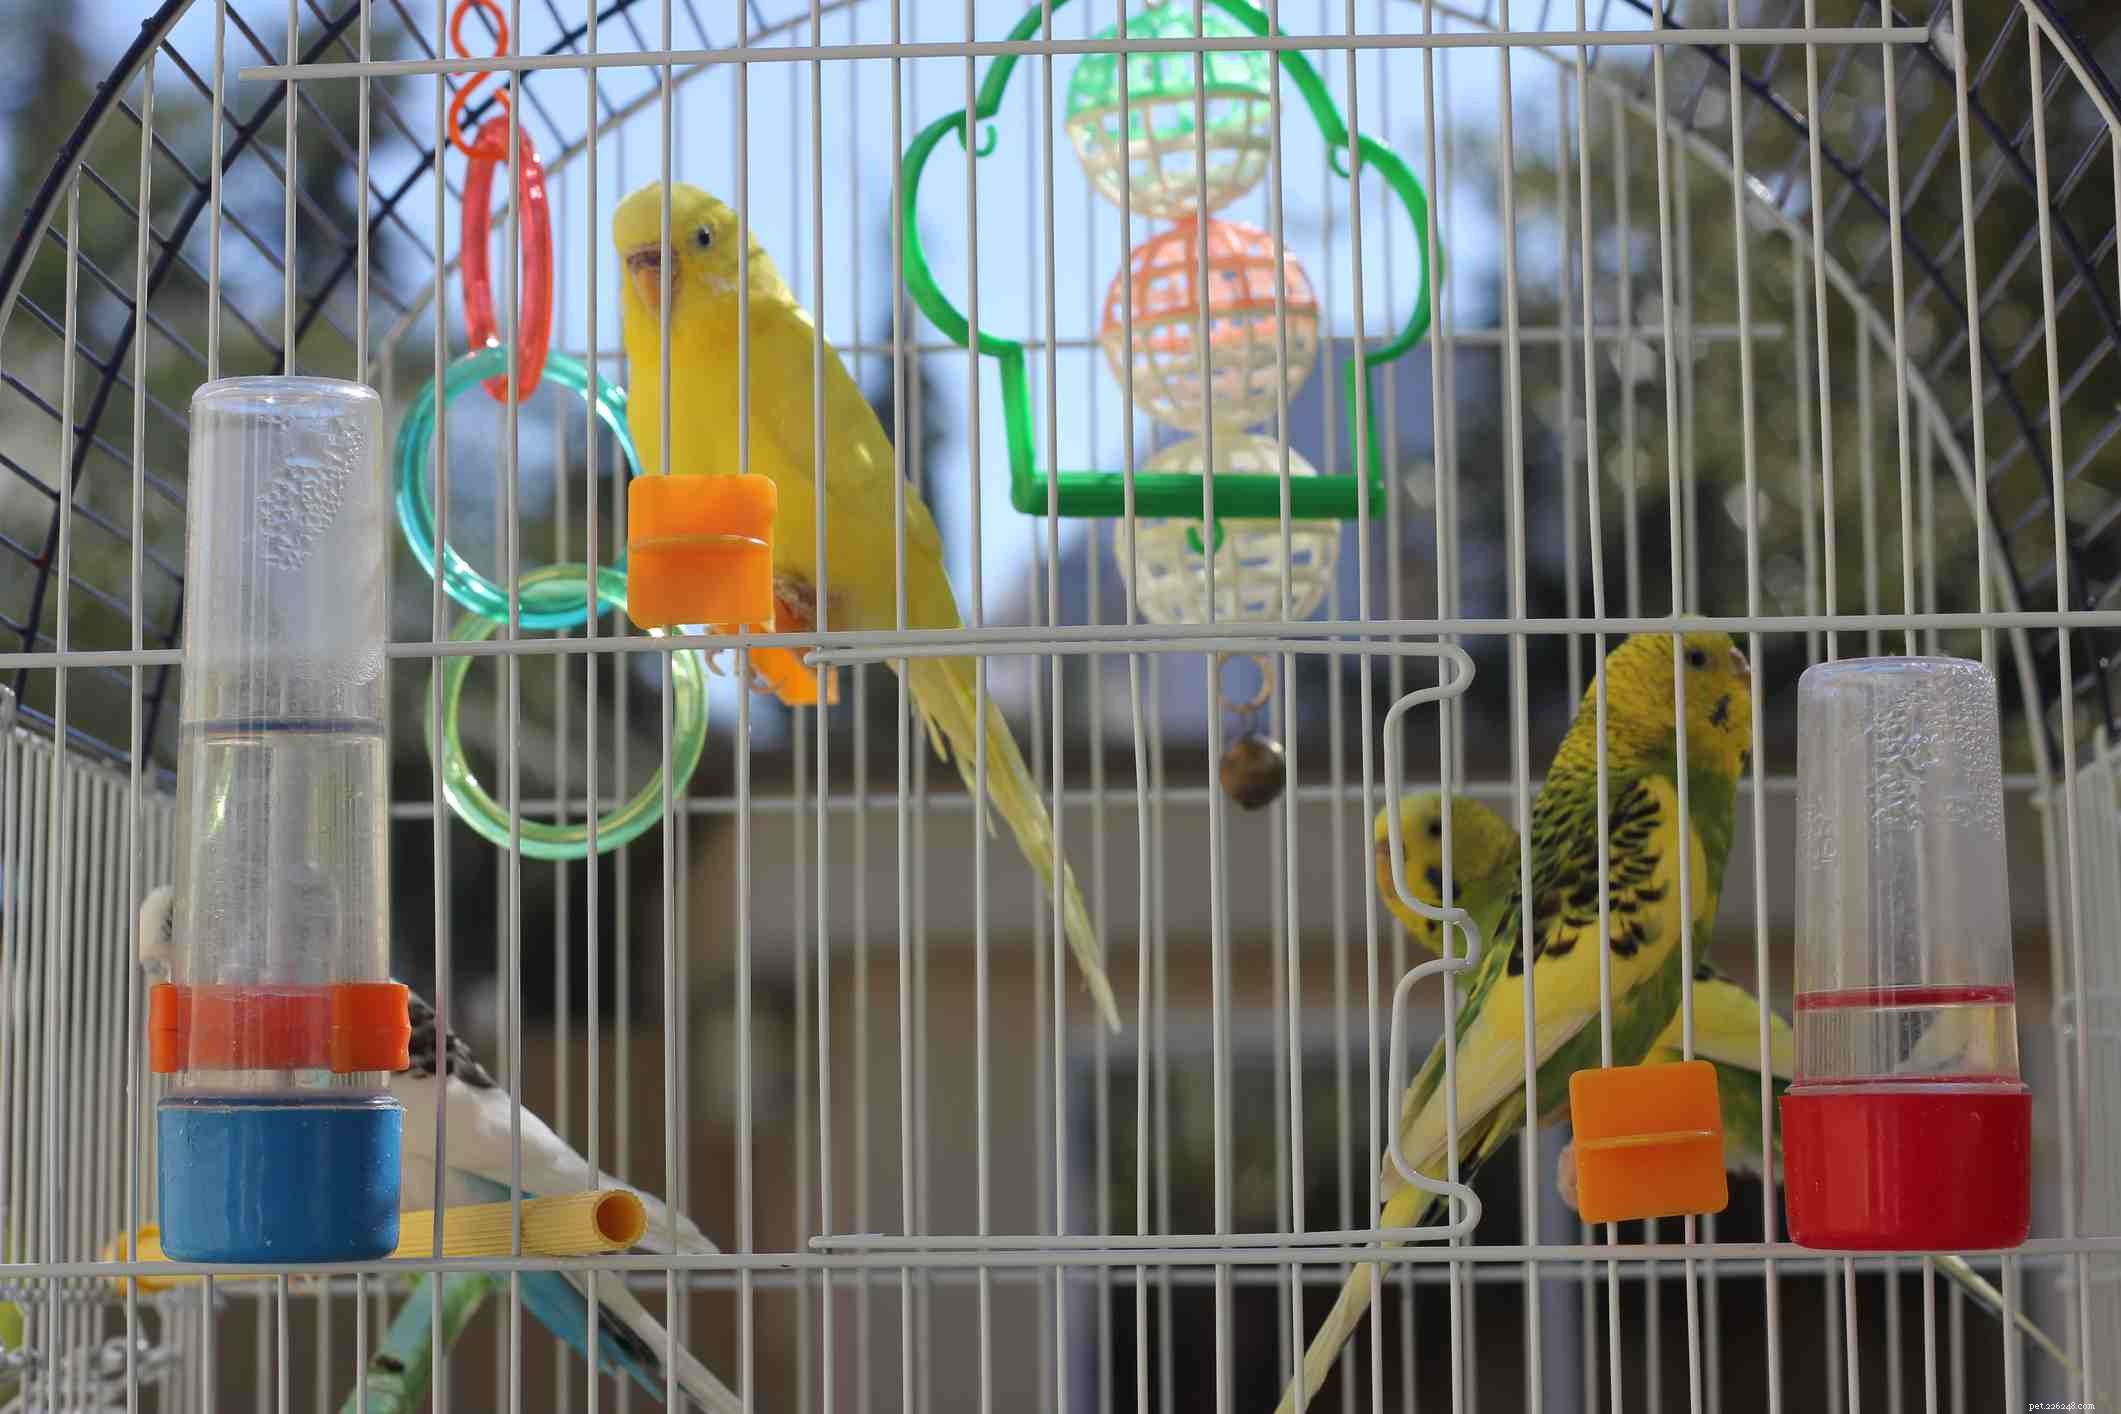 7 důvodů, proč jsou ptáci skvělými společníky pro správný domov